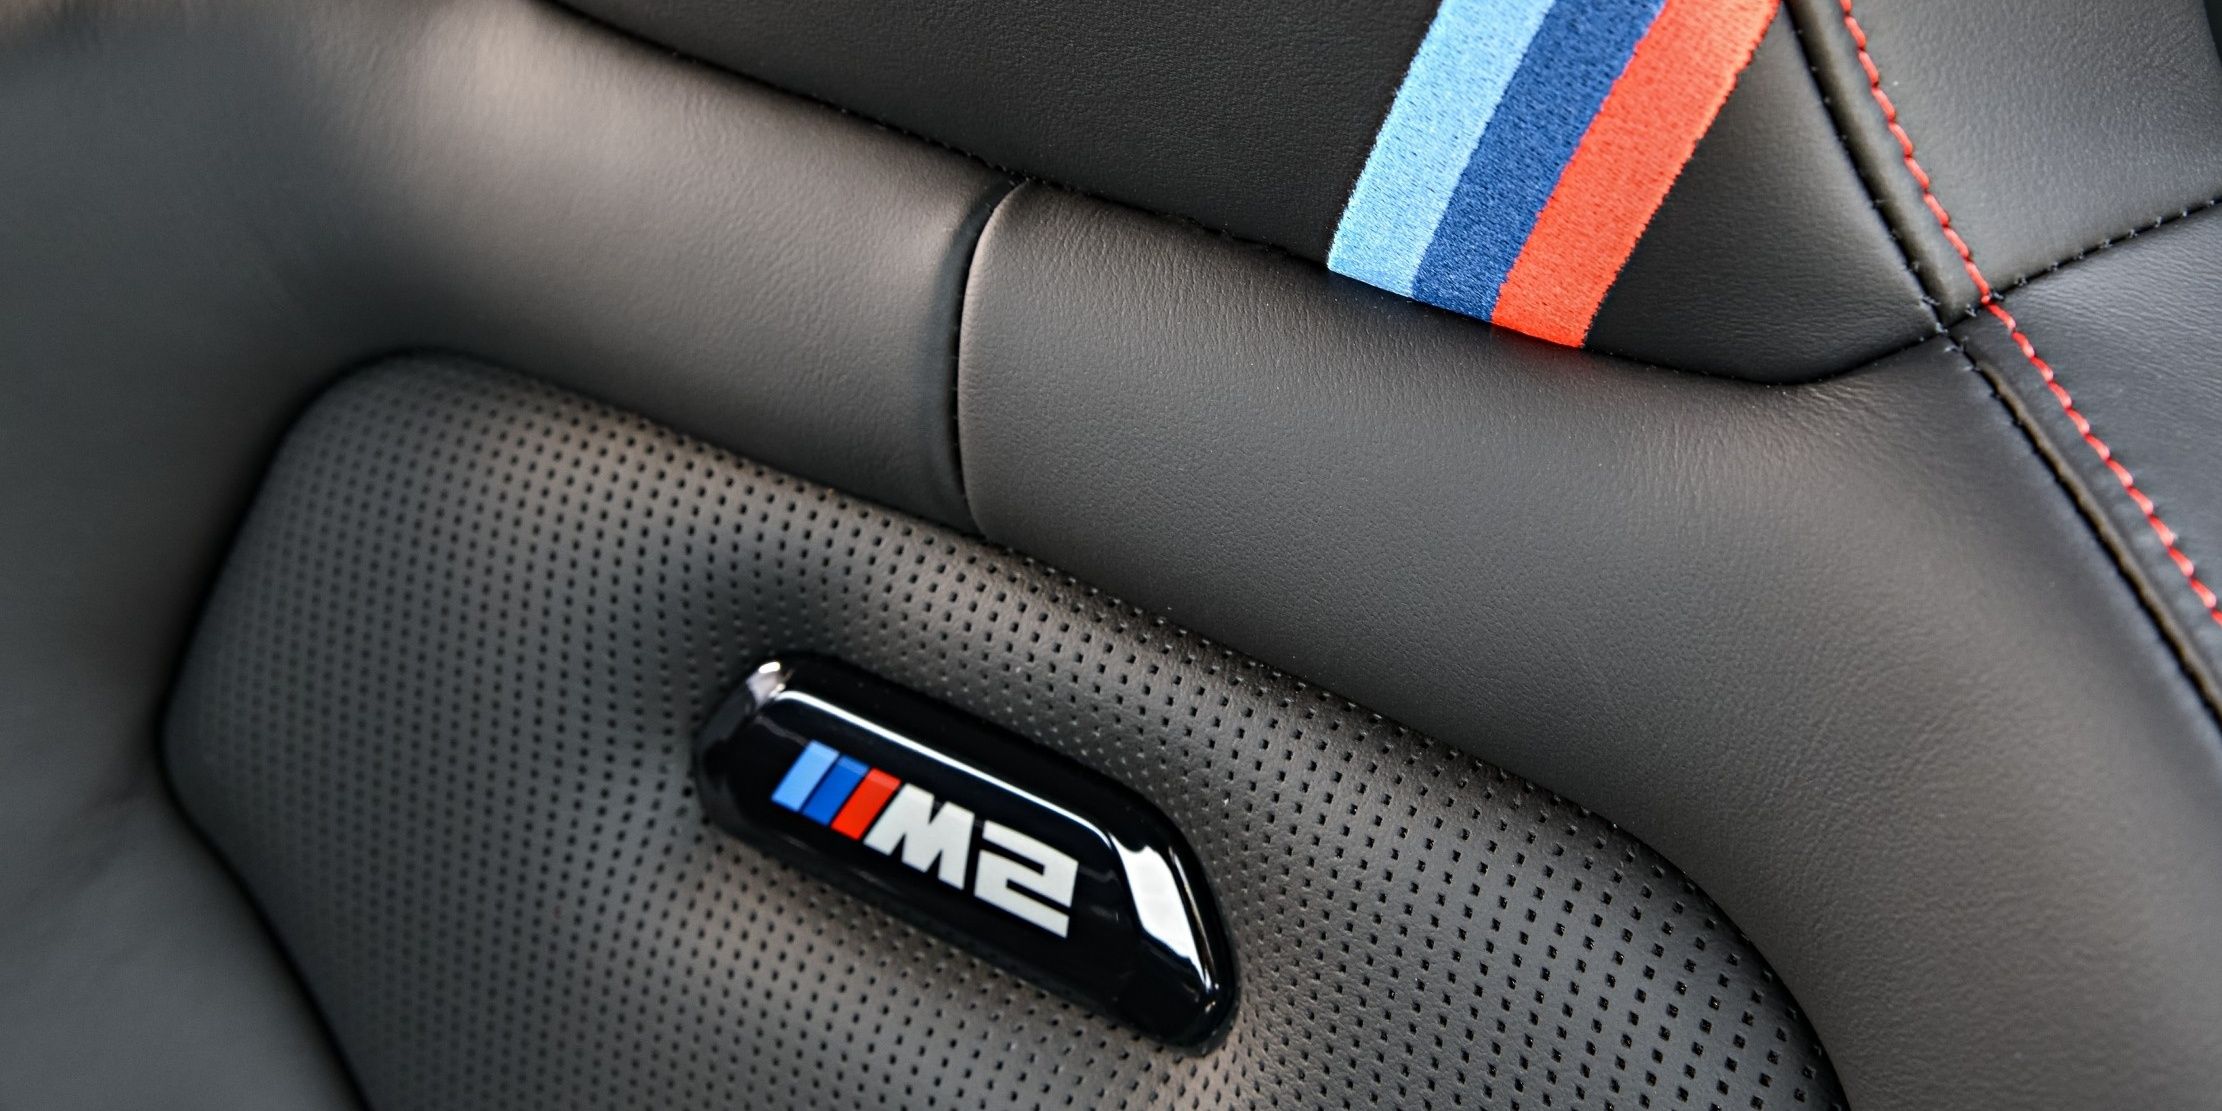 BMW M2 CS